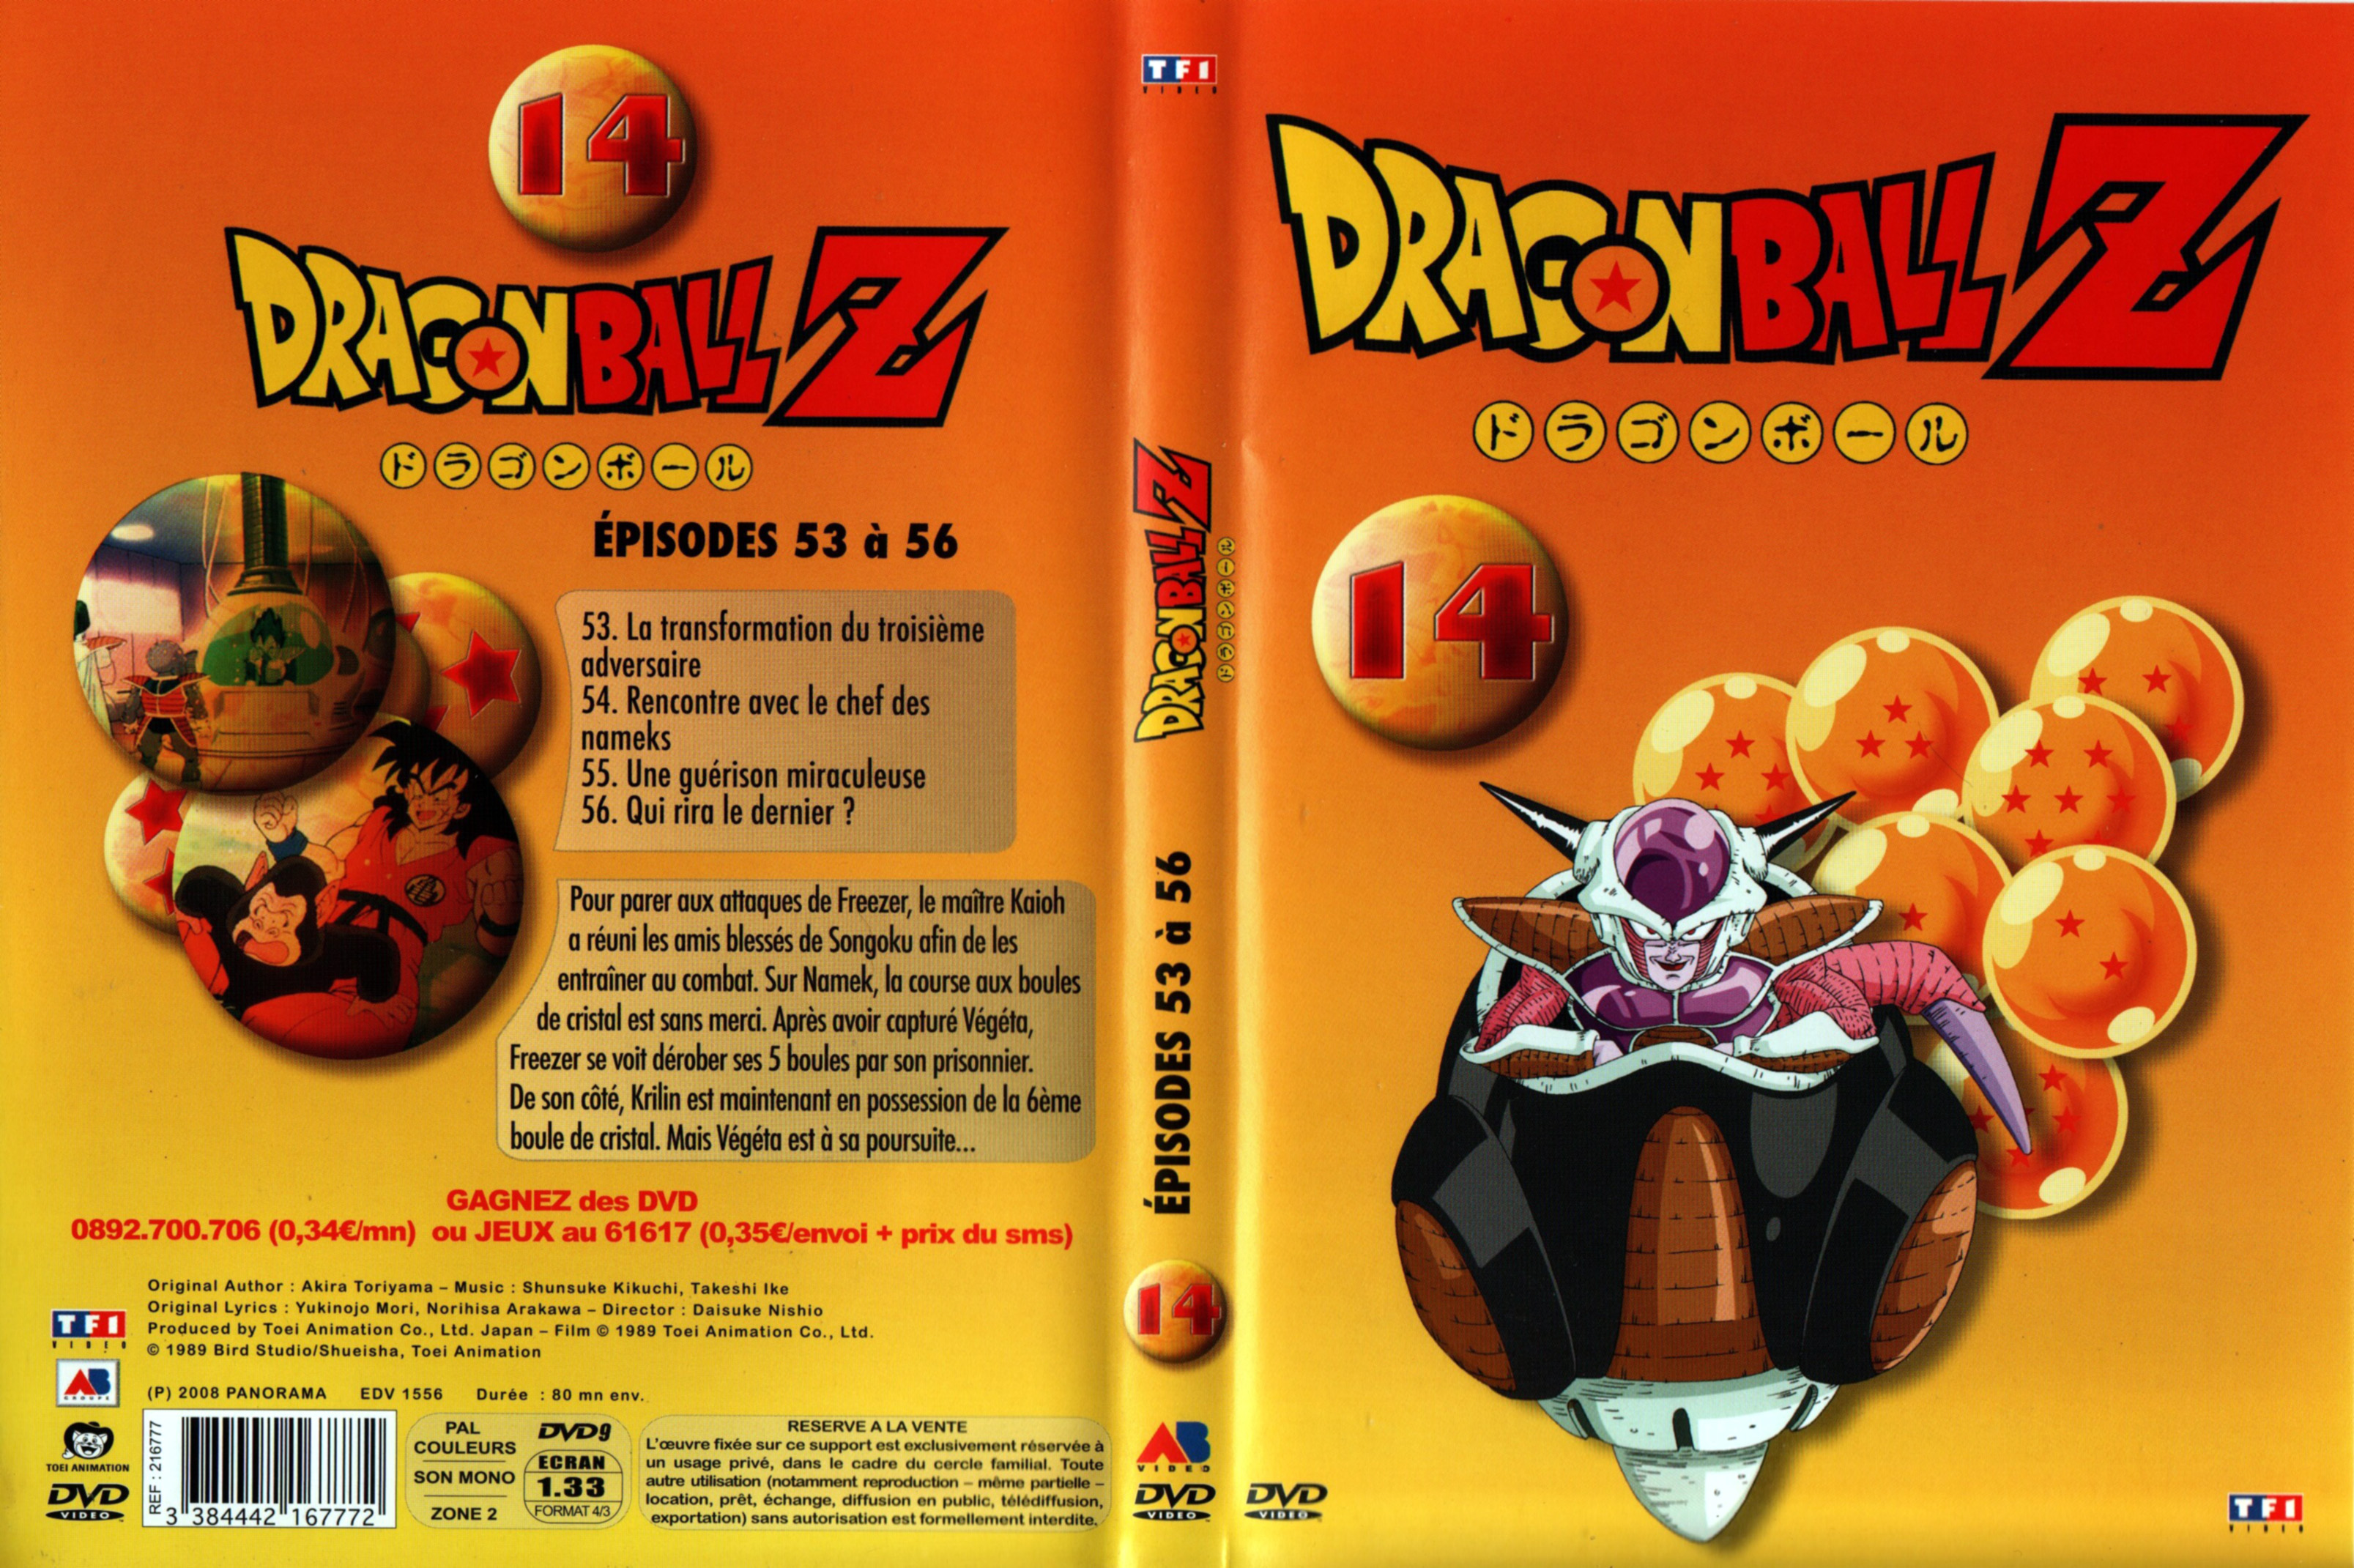 Jaquette DVD Dragon Ball Z vol 14 v2